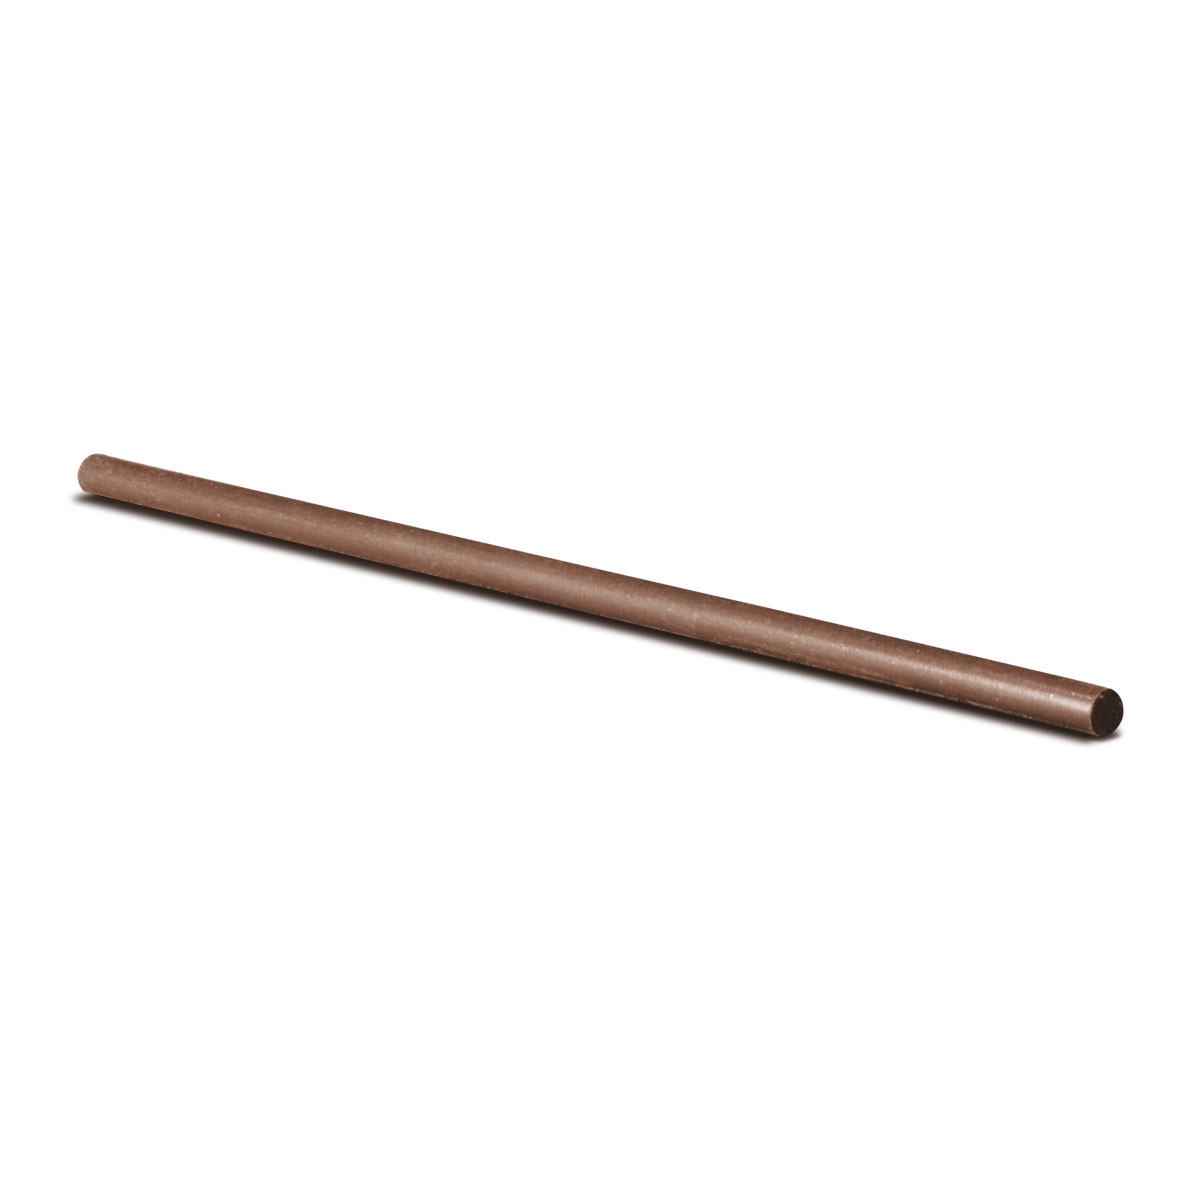 Cratex bâton de broyage, Ø 4,8 x 150 mm, Taille du grain 120, Rond, Brun clair